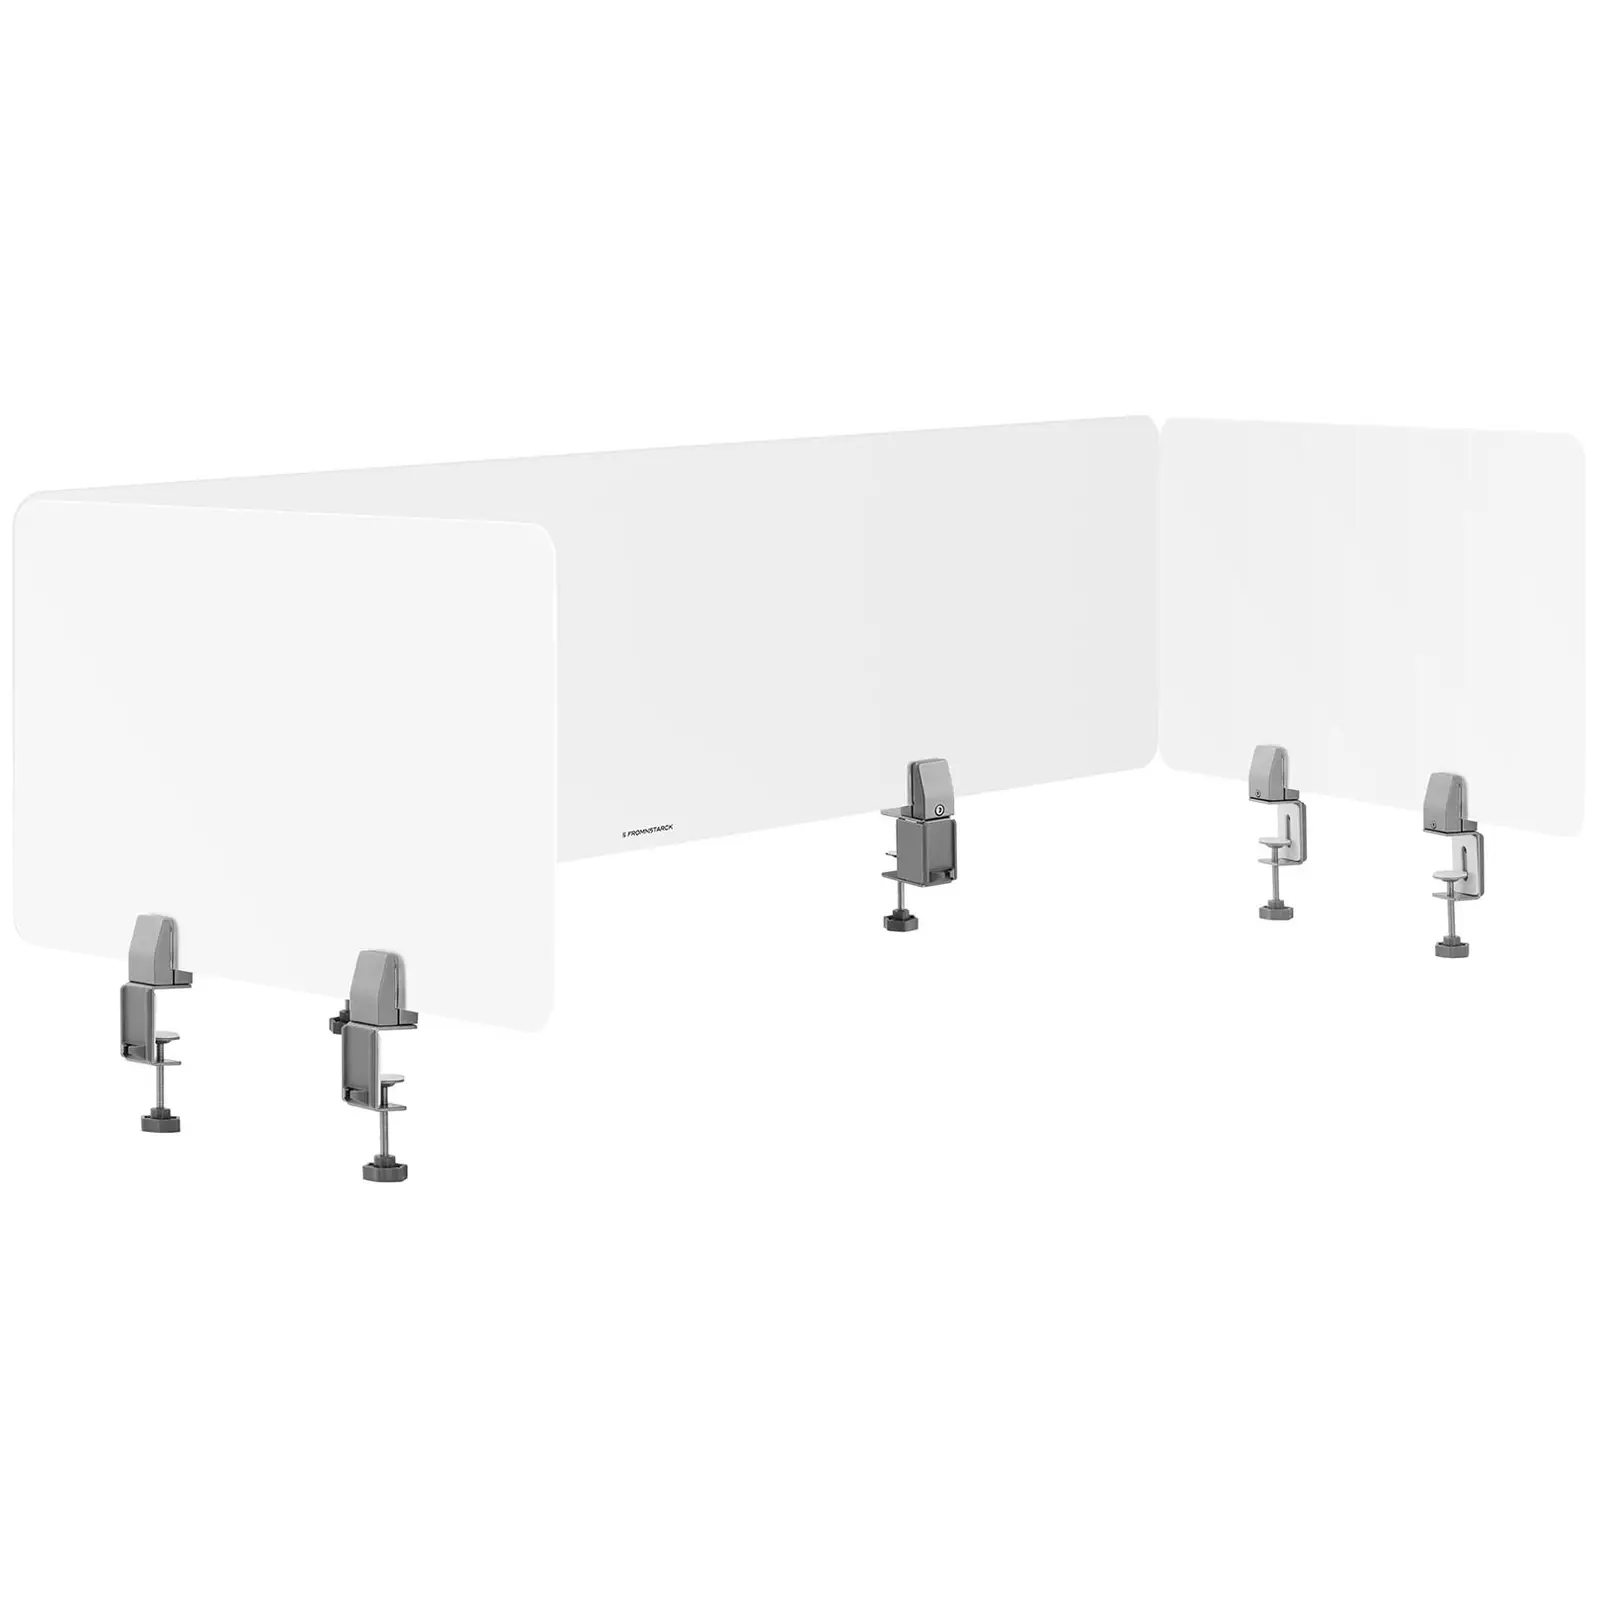 Ścianki działowe biurkowe - zestaw 3 szt. o wymiarach 1500 x 400, 750 x 400, 750 x 400 mm